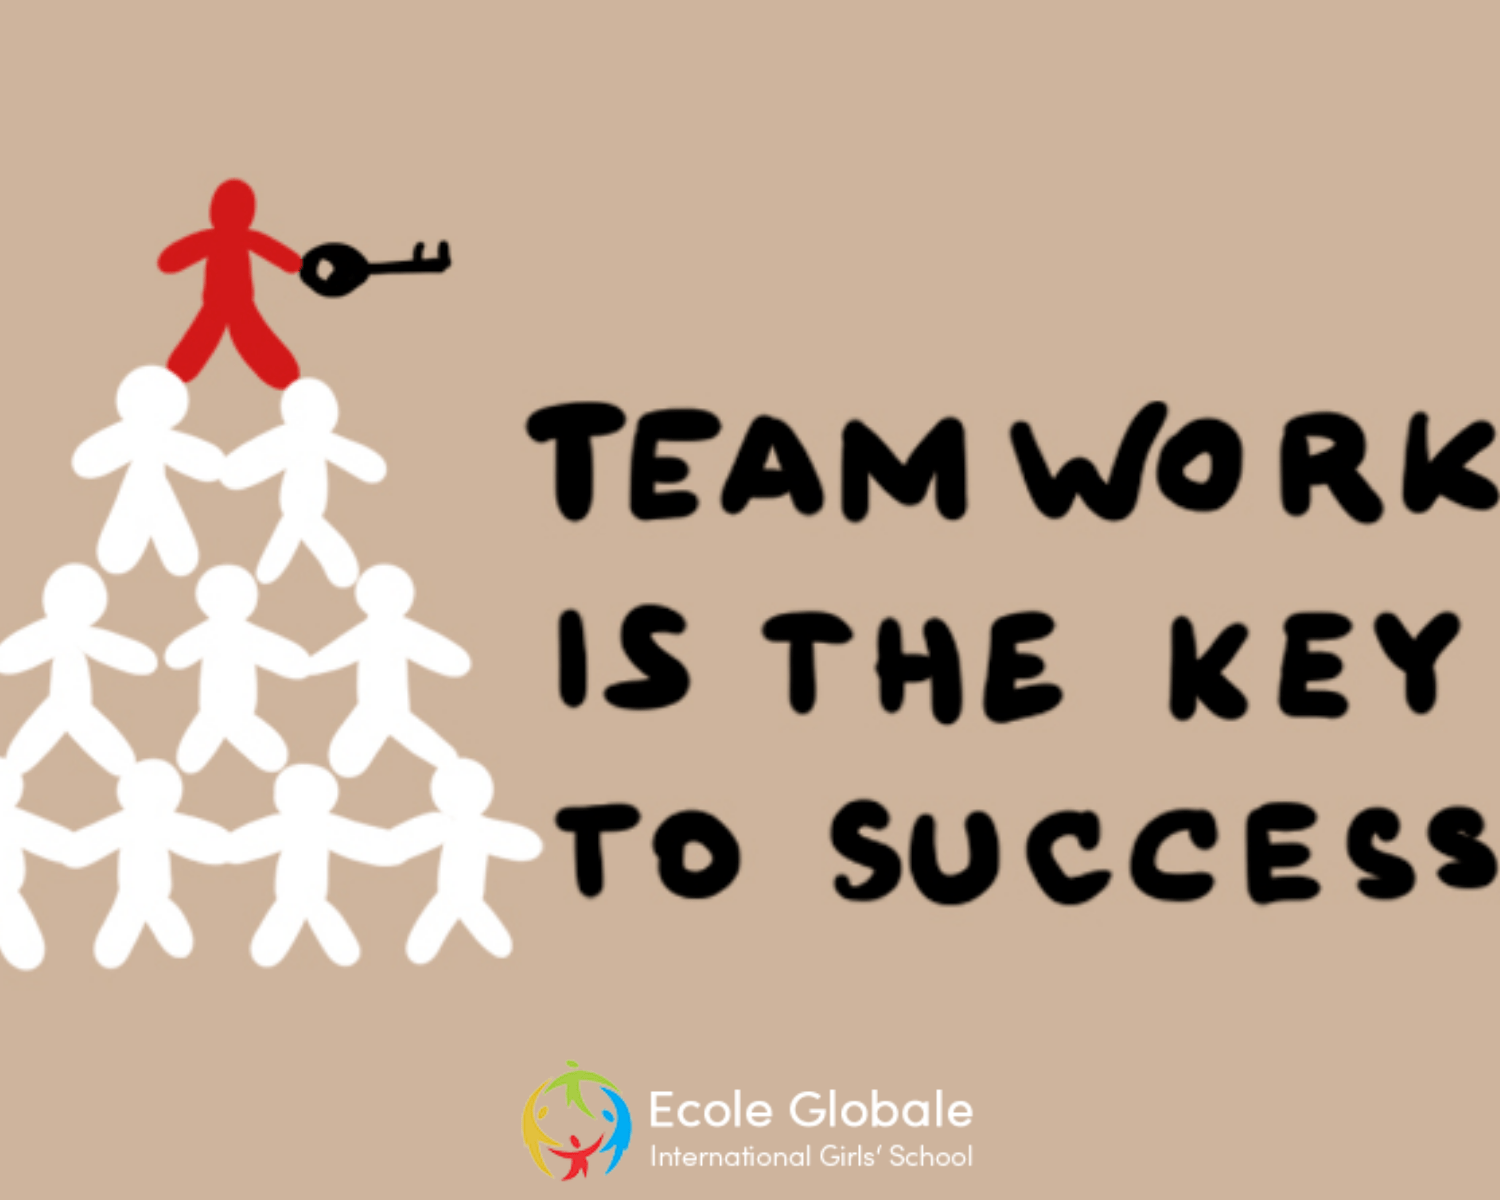 team work success images